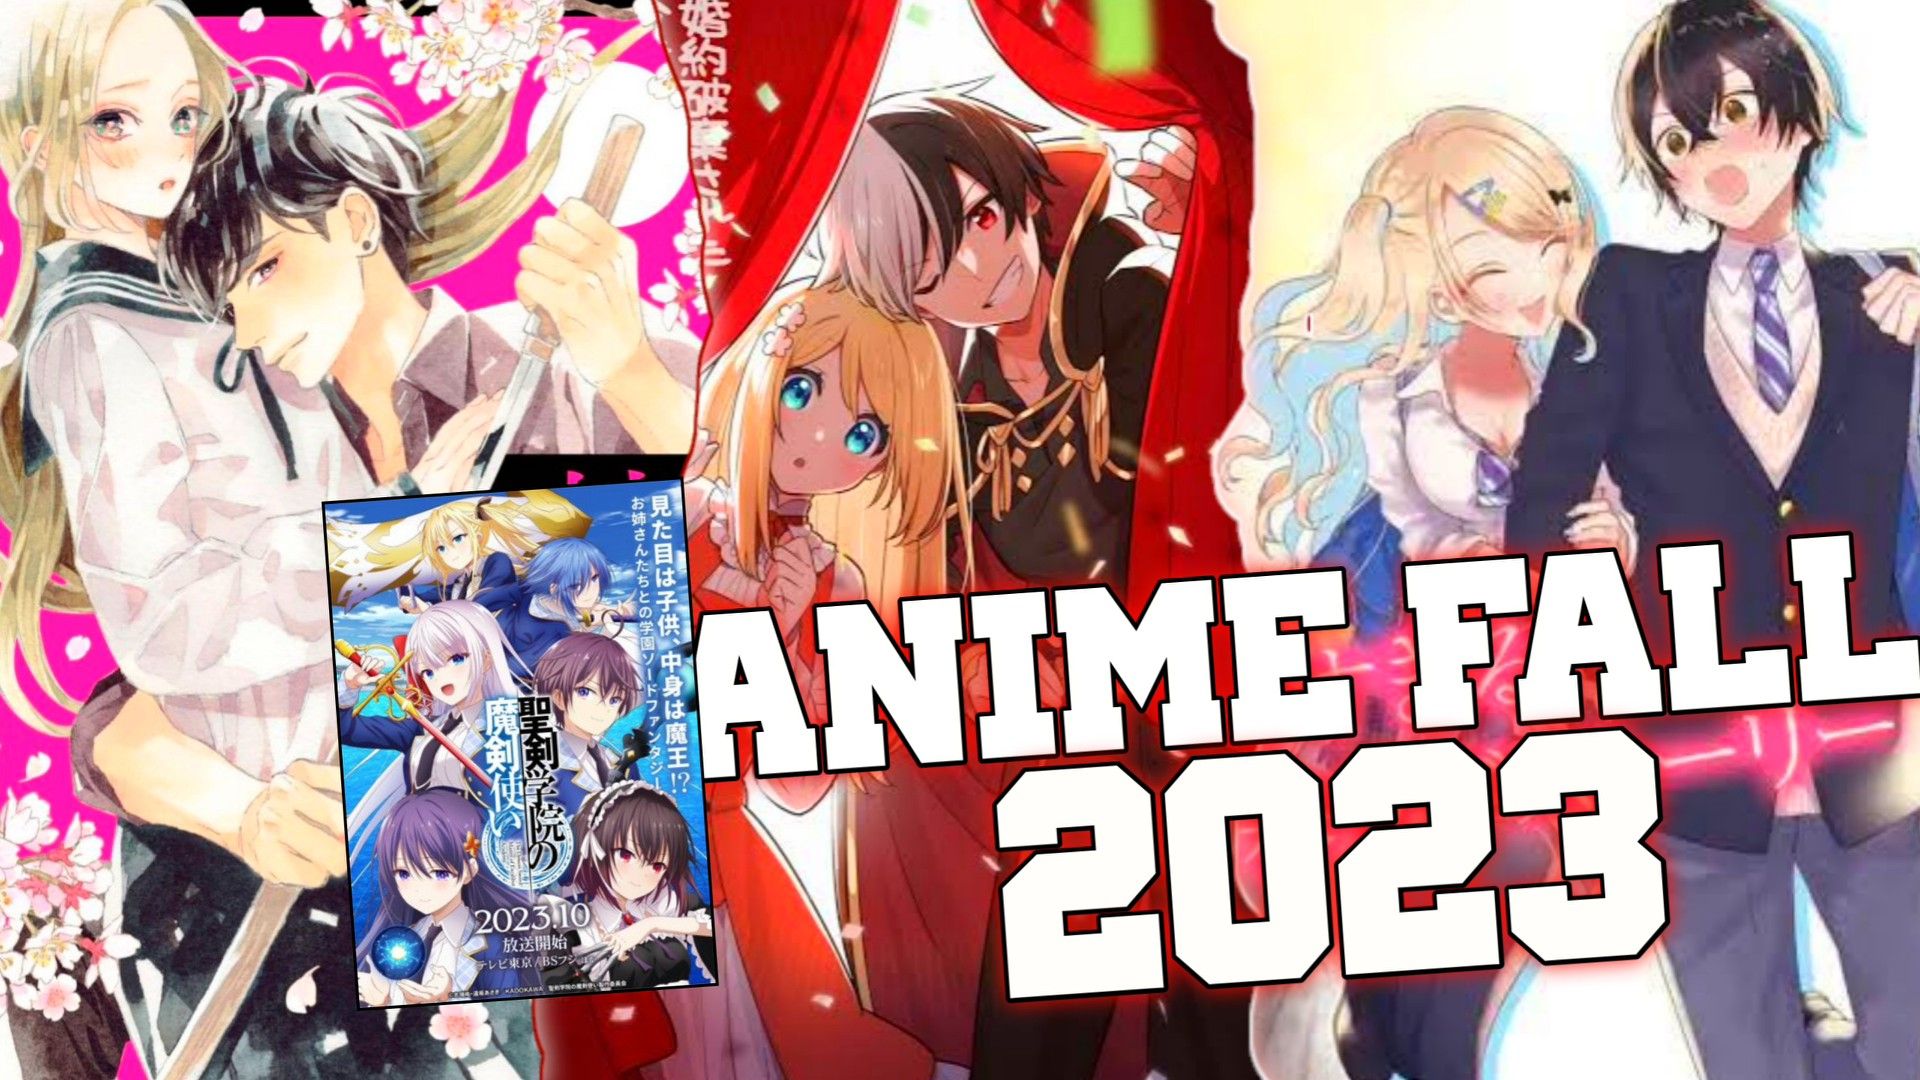 11 Rekomendasi Anime Fall 2023 Halaman 2 - Varia